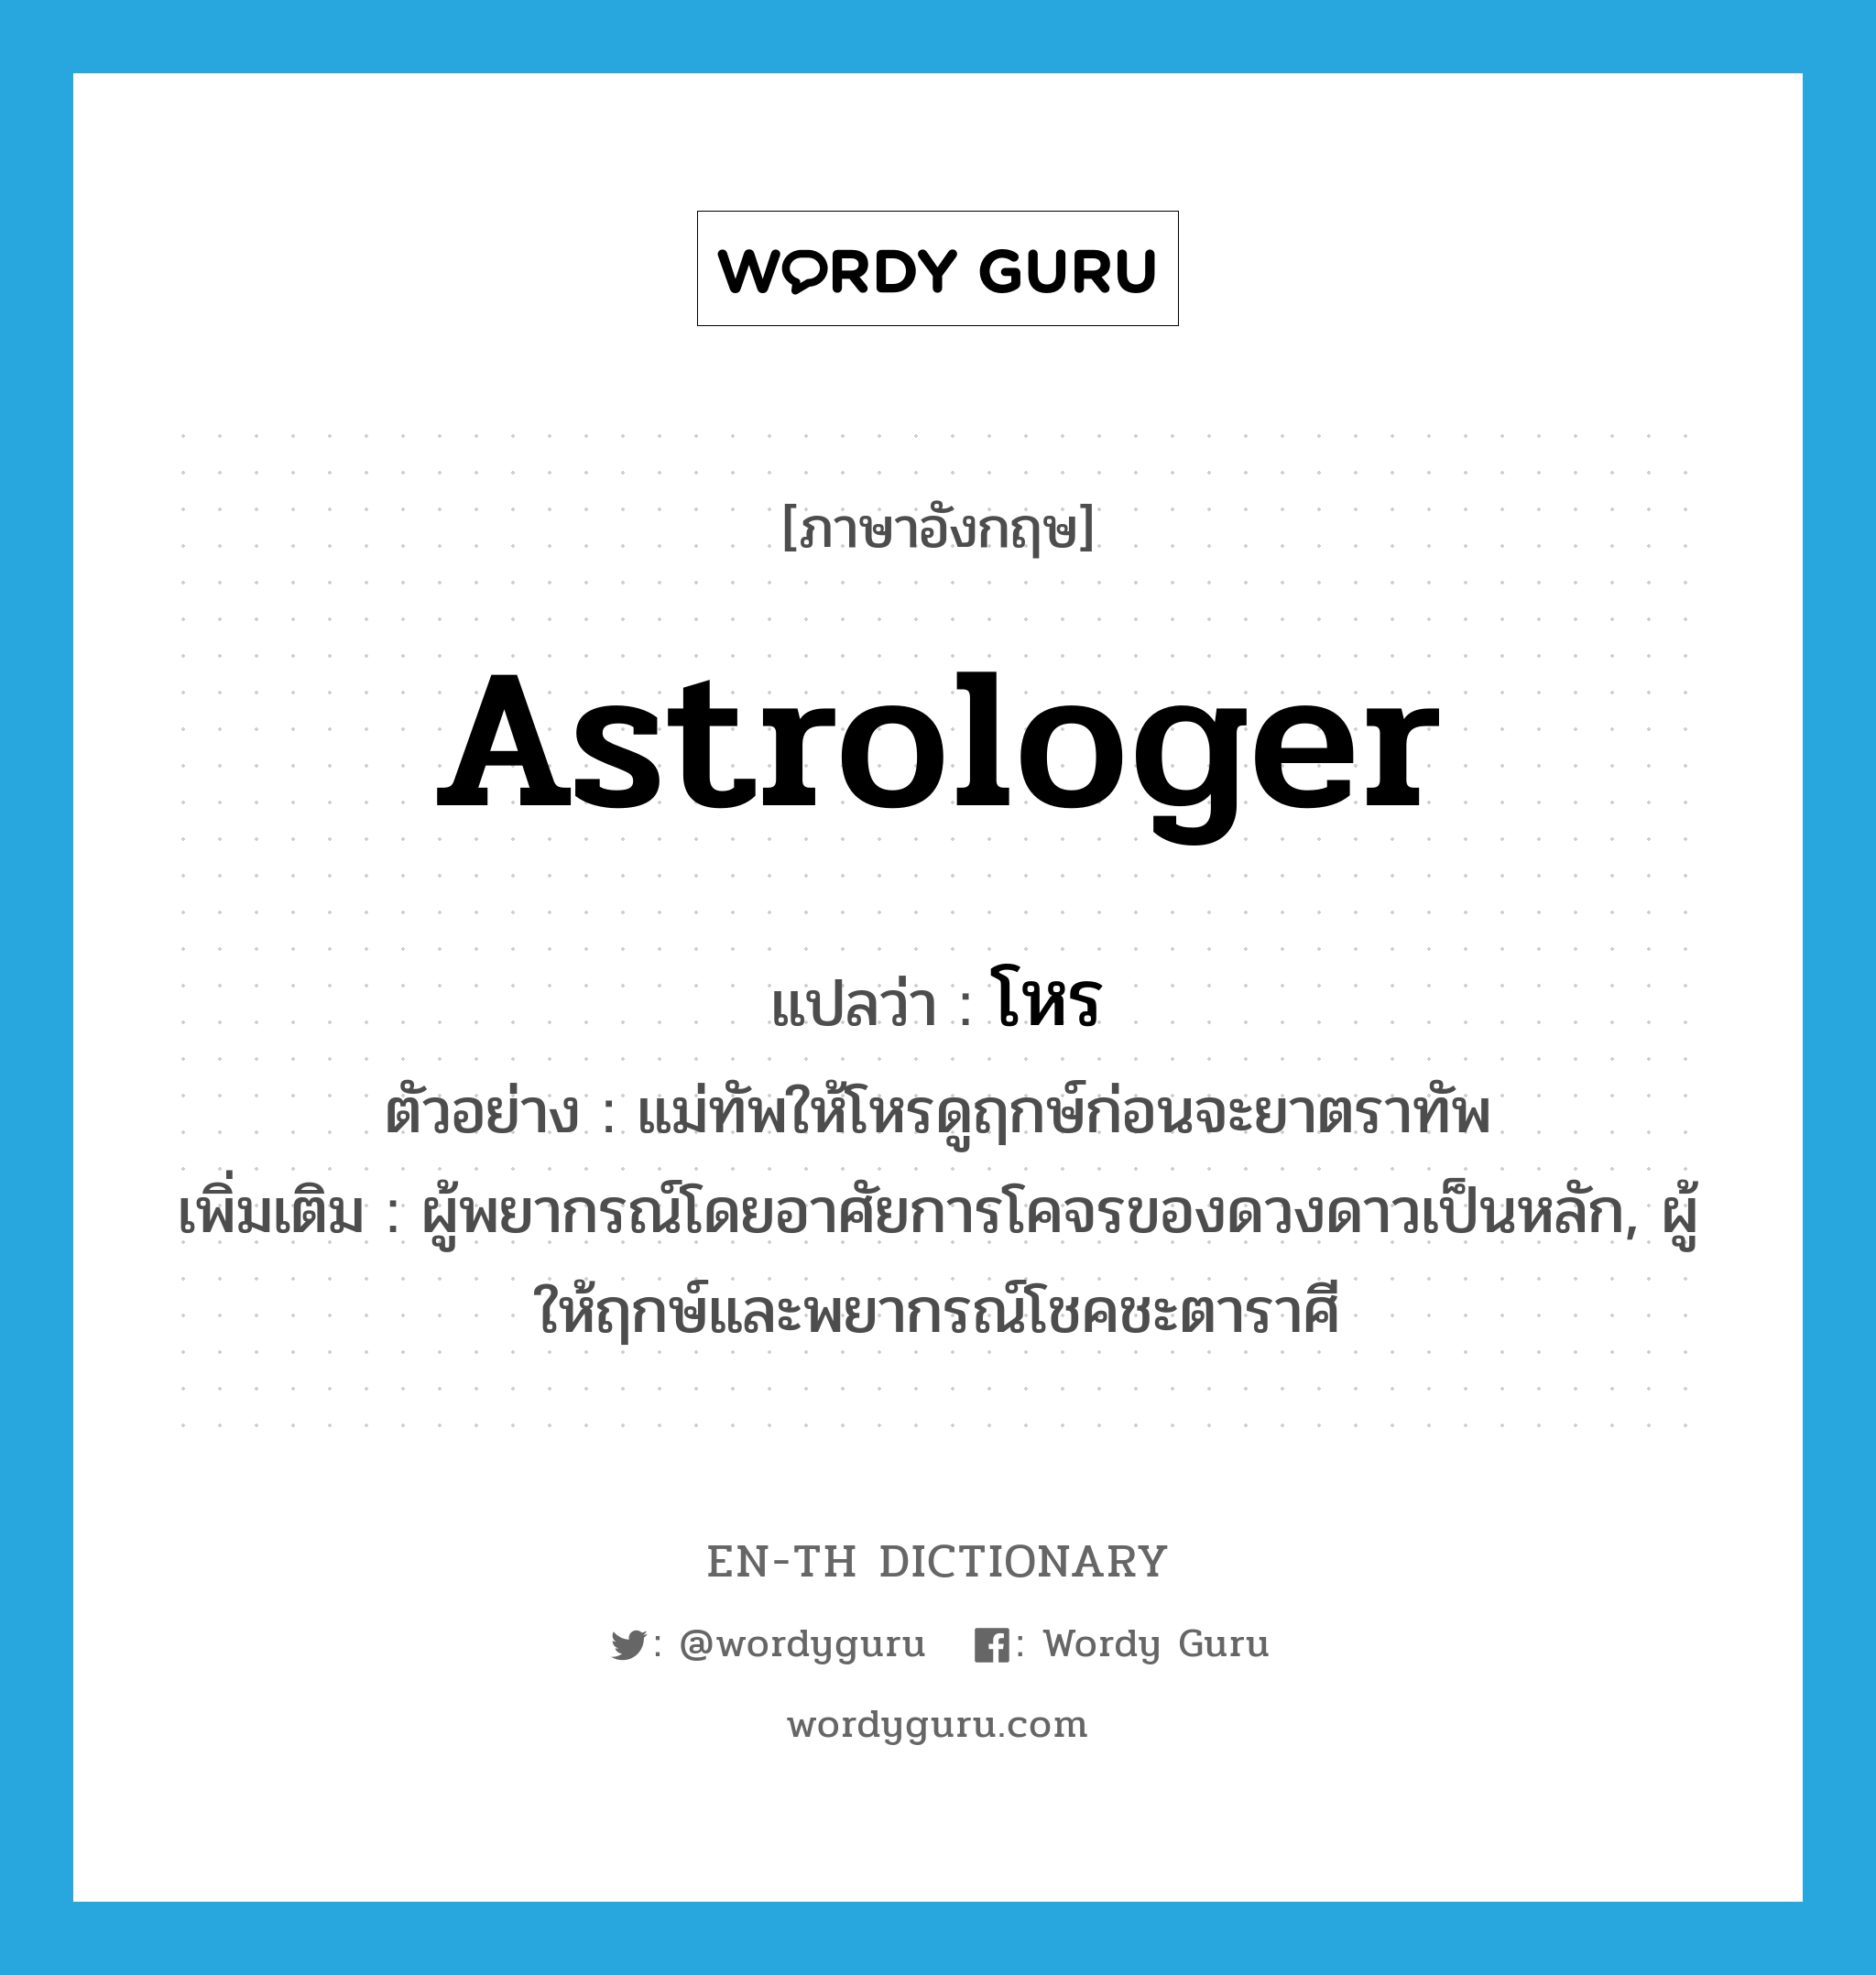 astrologer แปลว่า?, คำศัพท์ภาษาอังกฤษ astrologer แปลว่า โหร ประเภท N ตัวอย่าง แม่ทัพให้โหรดูฤกษ์ก่อนจะยาตราทัพ เพิ่มเติม ผู้พยากรณ์โดยอาศัยการโคจรของดวงดาวเป็นหลัก, ผู้ให้ฤกษ์และพยากรณ์โชคชะตาราศี หมวด N